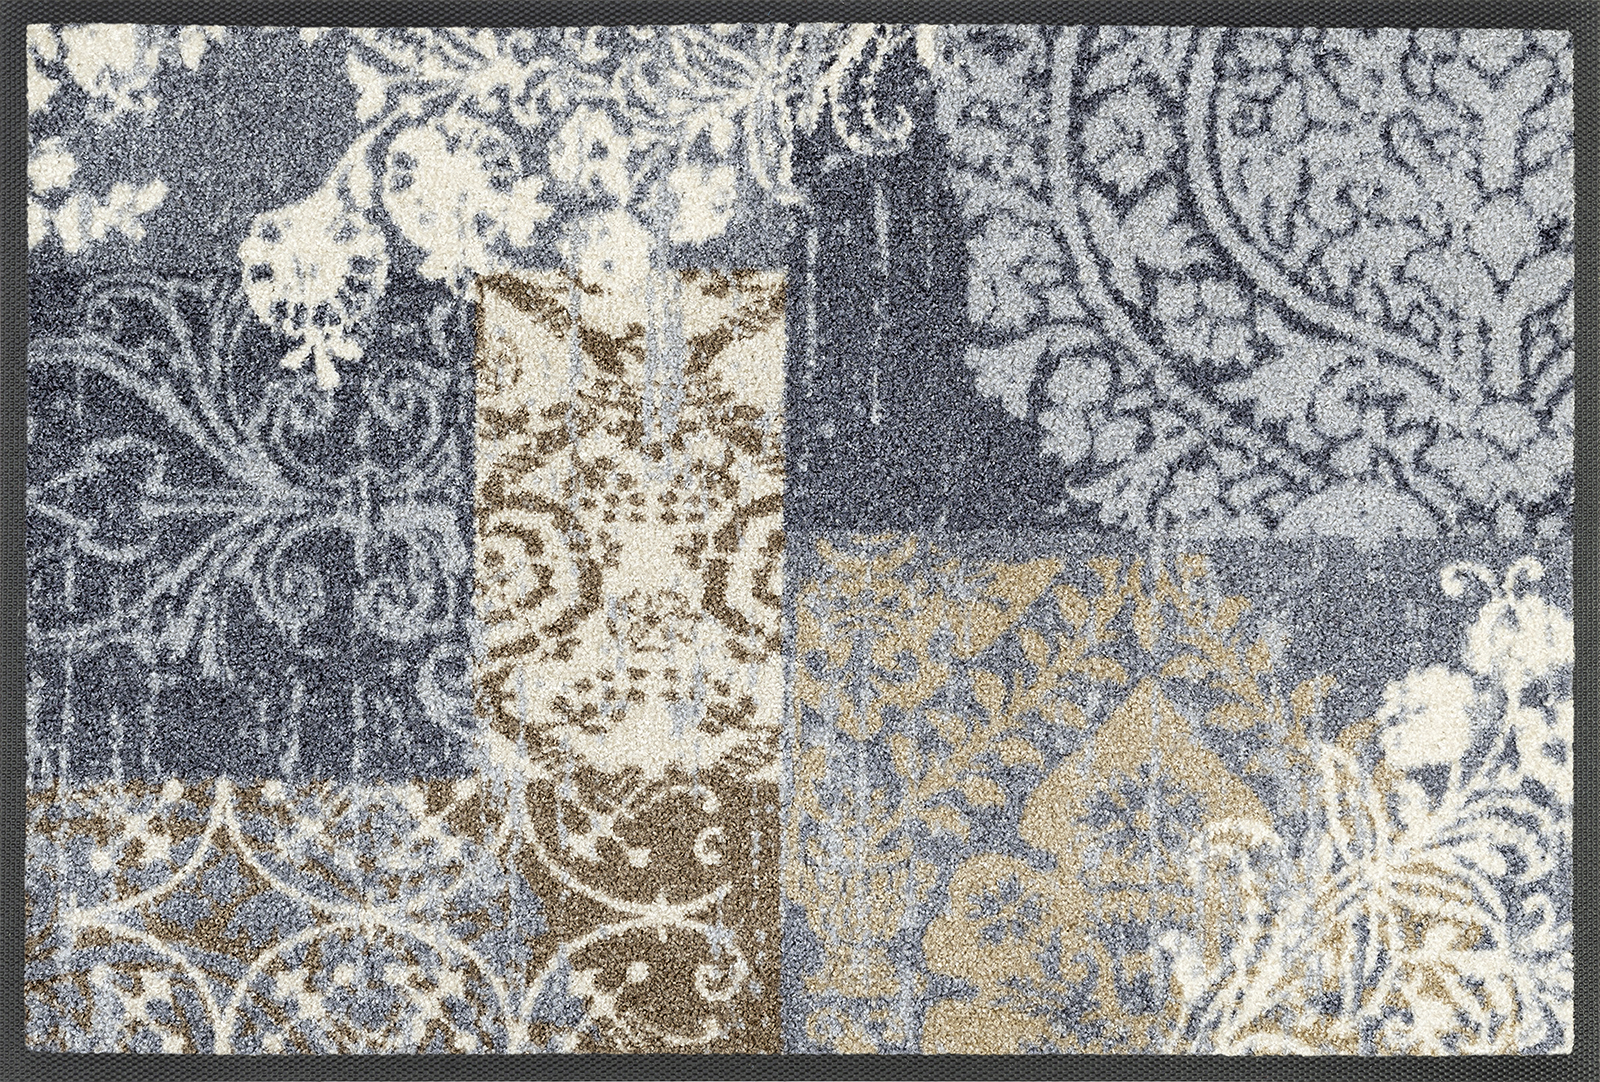 Sauberlaufmatte Armonia grey, Wash & Dry Interior Design, 40 x 60 cm, Draufsicht